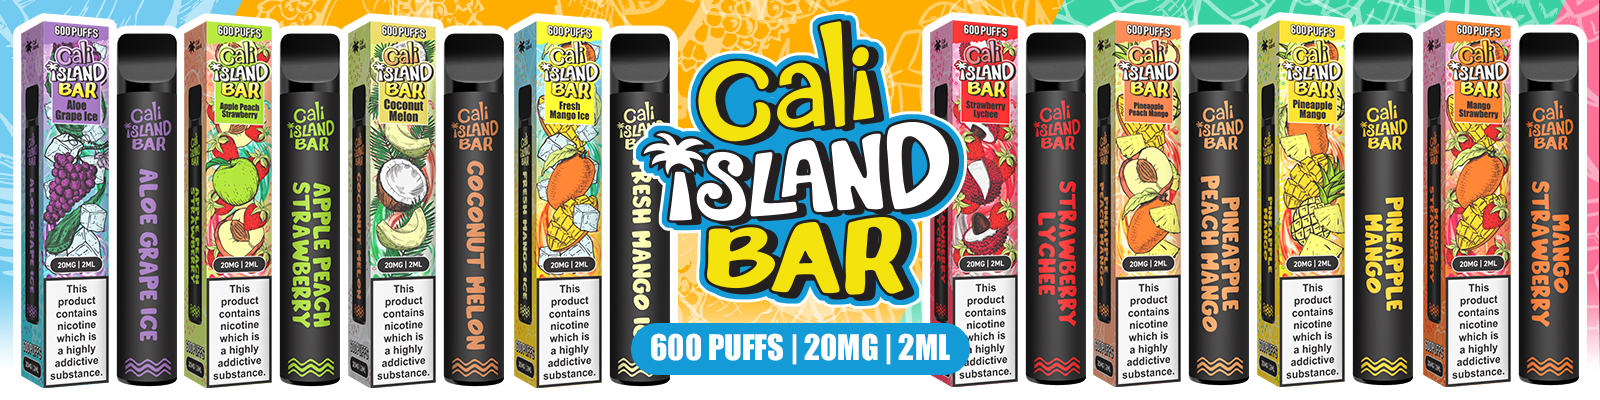 Cali Island Bar 